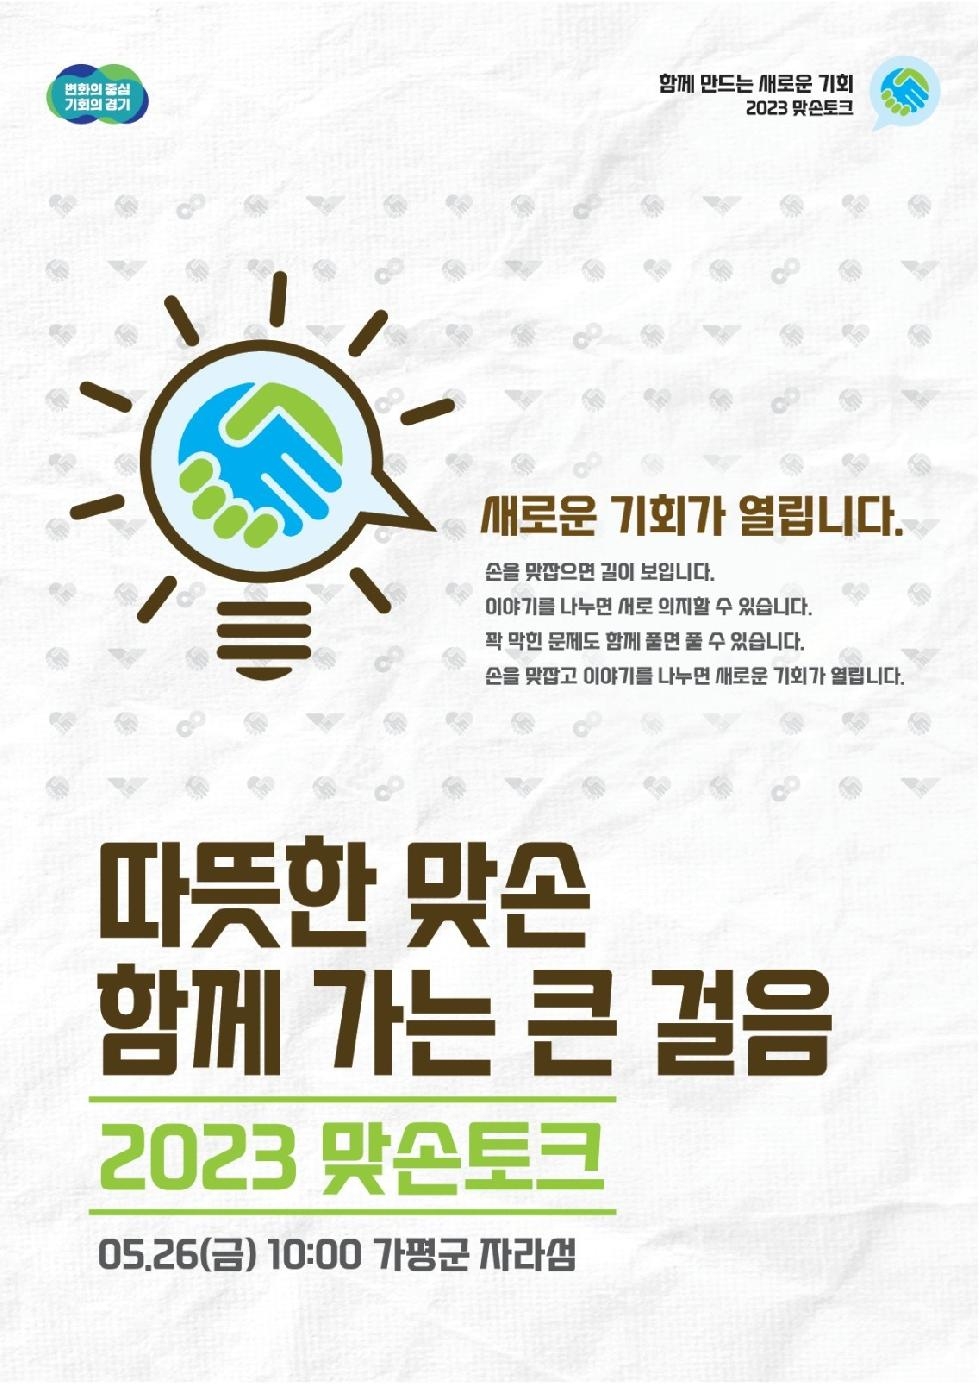 경기도, 26일 가평군 자라섬에서 ‘관광산업 활성화’ 주제로 7번째 맞손토크 개최